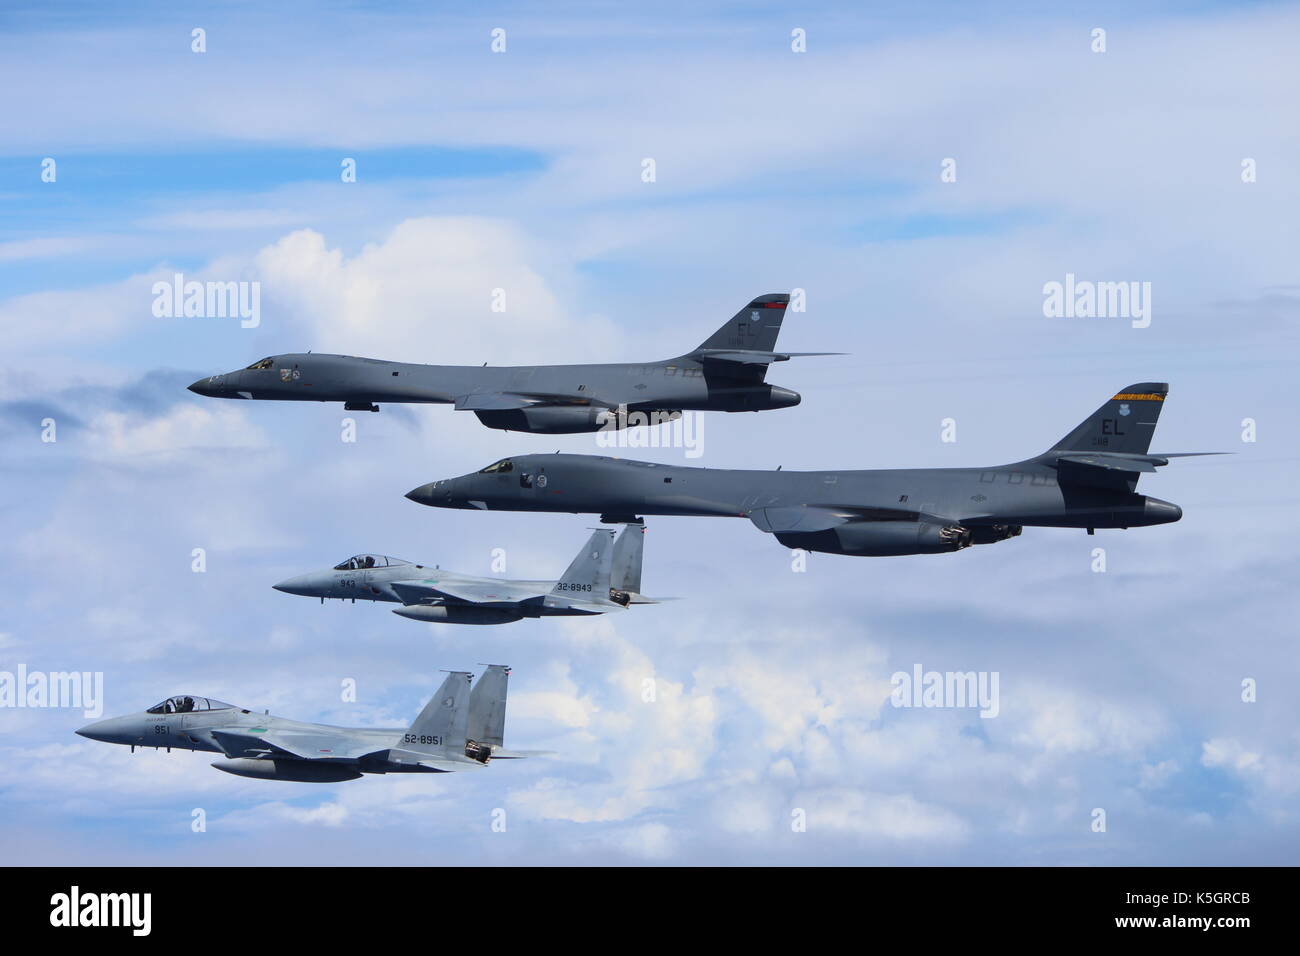 El mar de China oriental, cerca de Corea del Norte. El 9 de septiembre de 2017. dos de la fuerza aérea estadounidense bombarderos B-1B Lancer con la 37ª expedicionaria escuadrón de bombas son escoltados por un Japón fuerza de autodefensa aérea cazas F-15 durante una patrulla mixta bilateral como una demostración de fuerza a Corea del Norte el 9 de septiembre de 2017 sobre el mar de China oriental. Crédito: planetpix/alamy live news Foto de stock